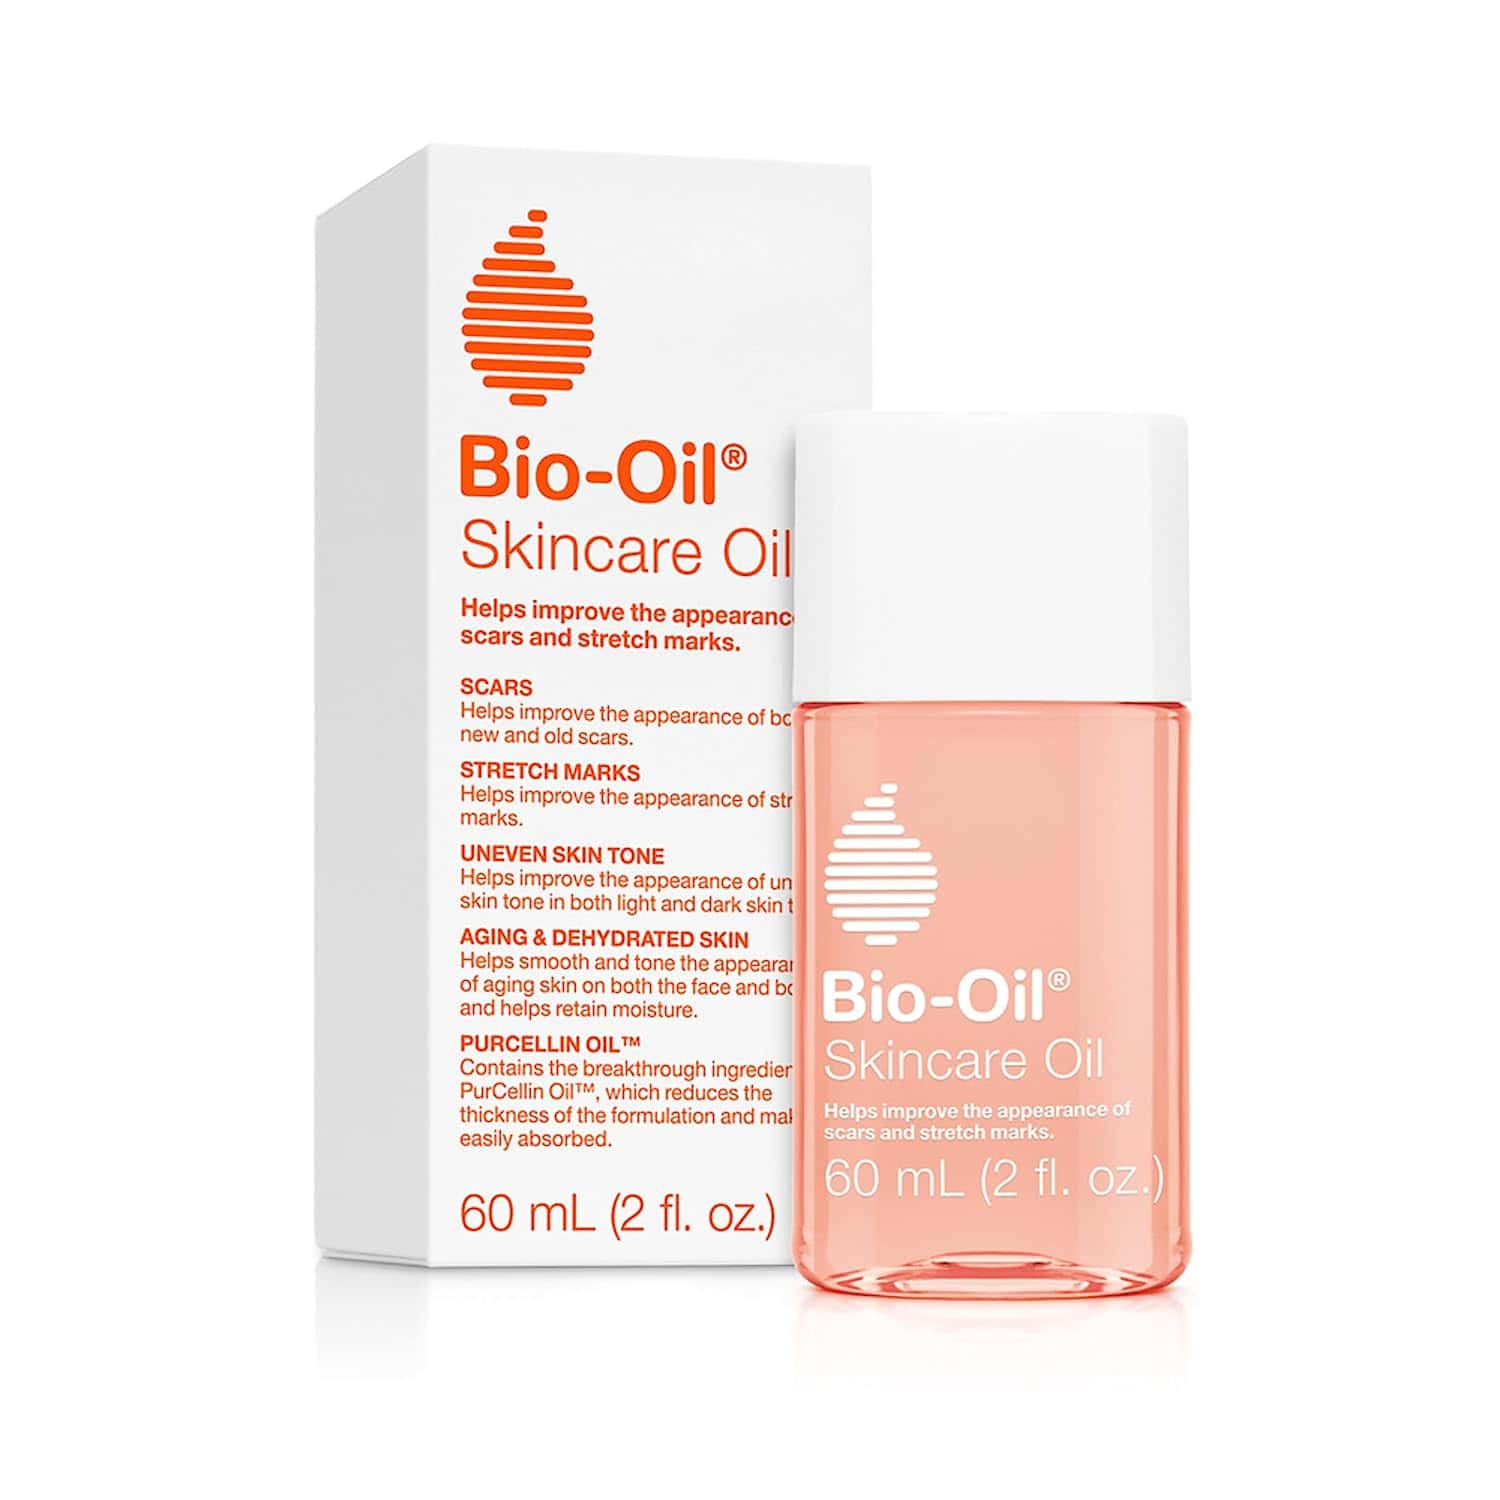 Bio-Oil Body Oil